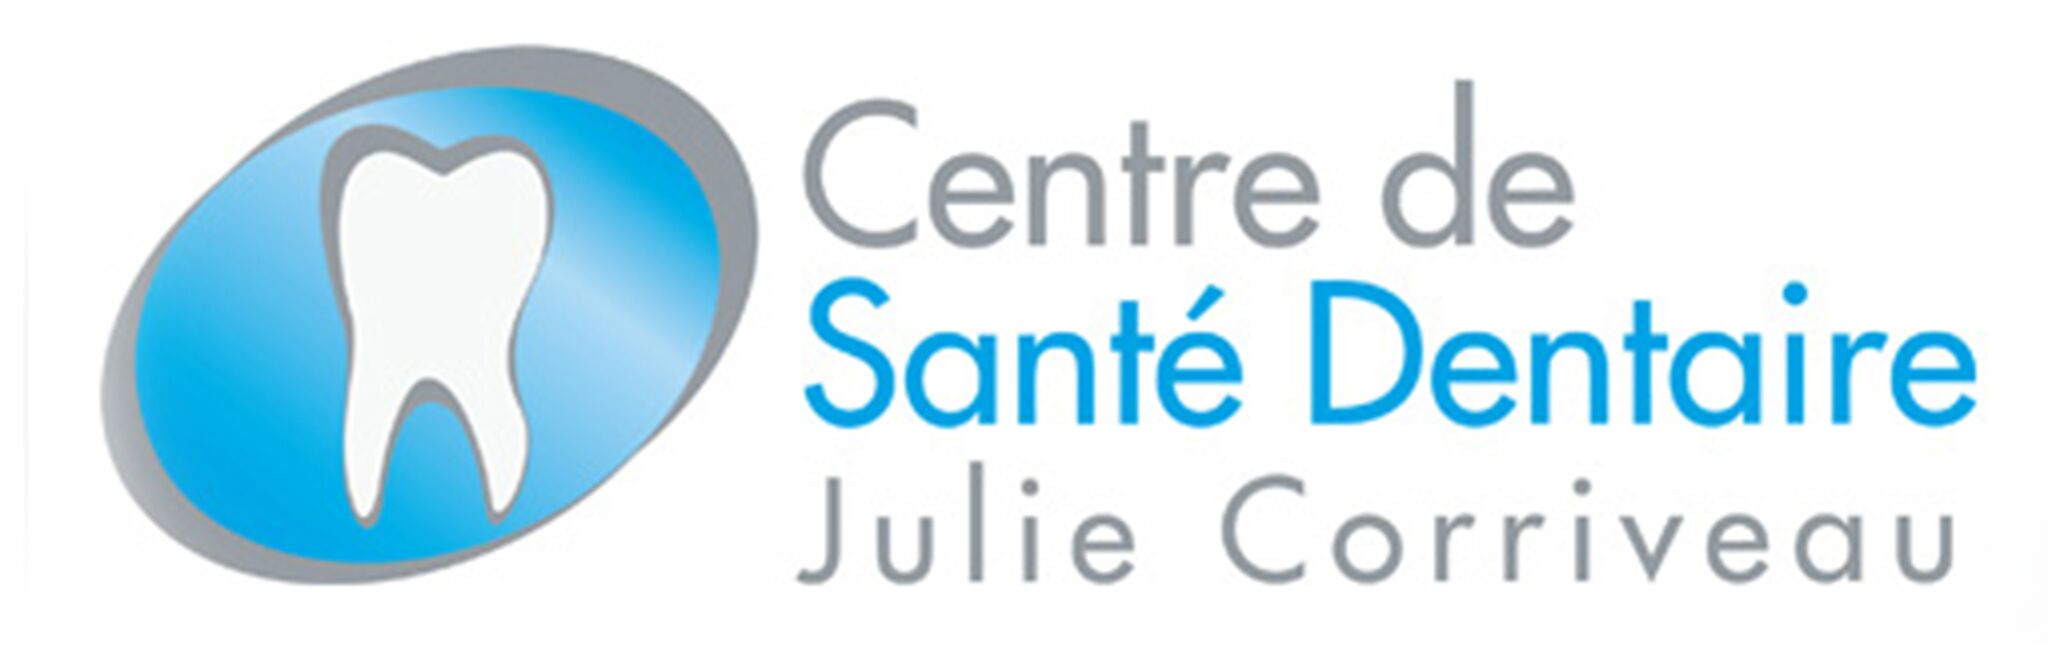 Centre De Santé Dentaire Julie Corriveau